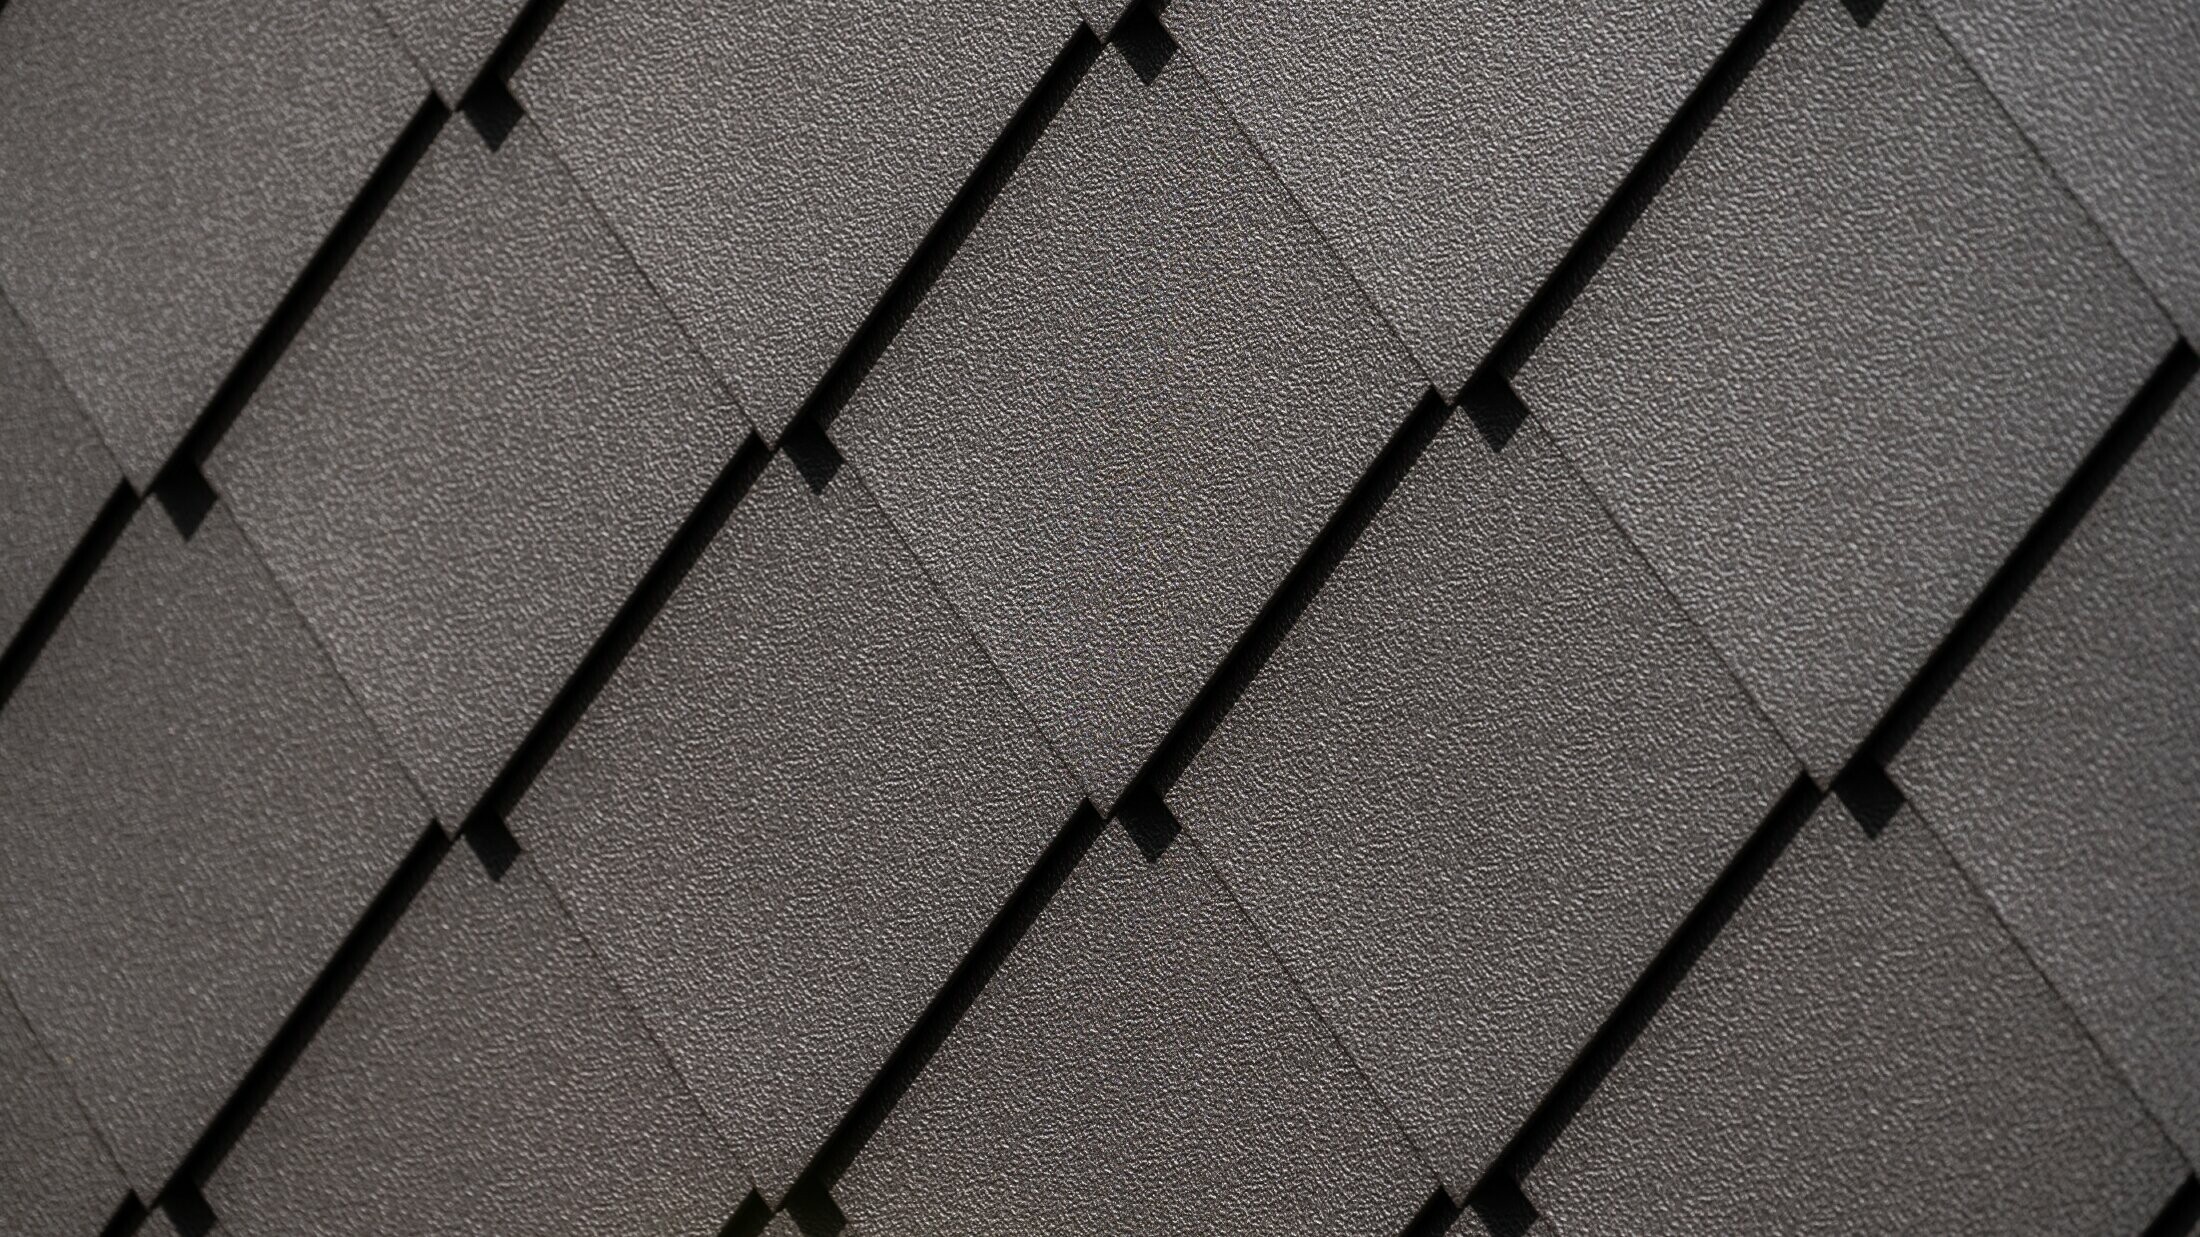 PREFA fasádna šablóna 29 × 29 vo farbe orieškovohnedá, záber zblízka s povrchom stucco